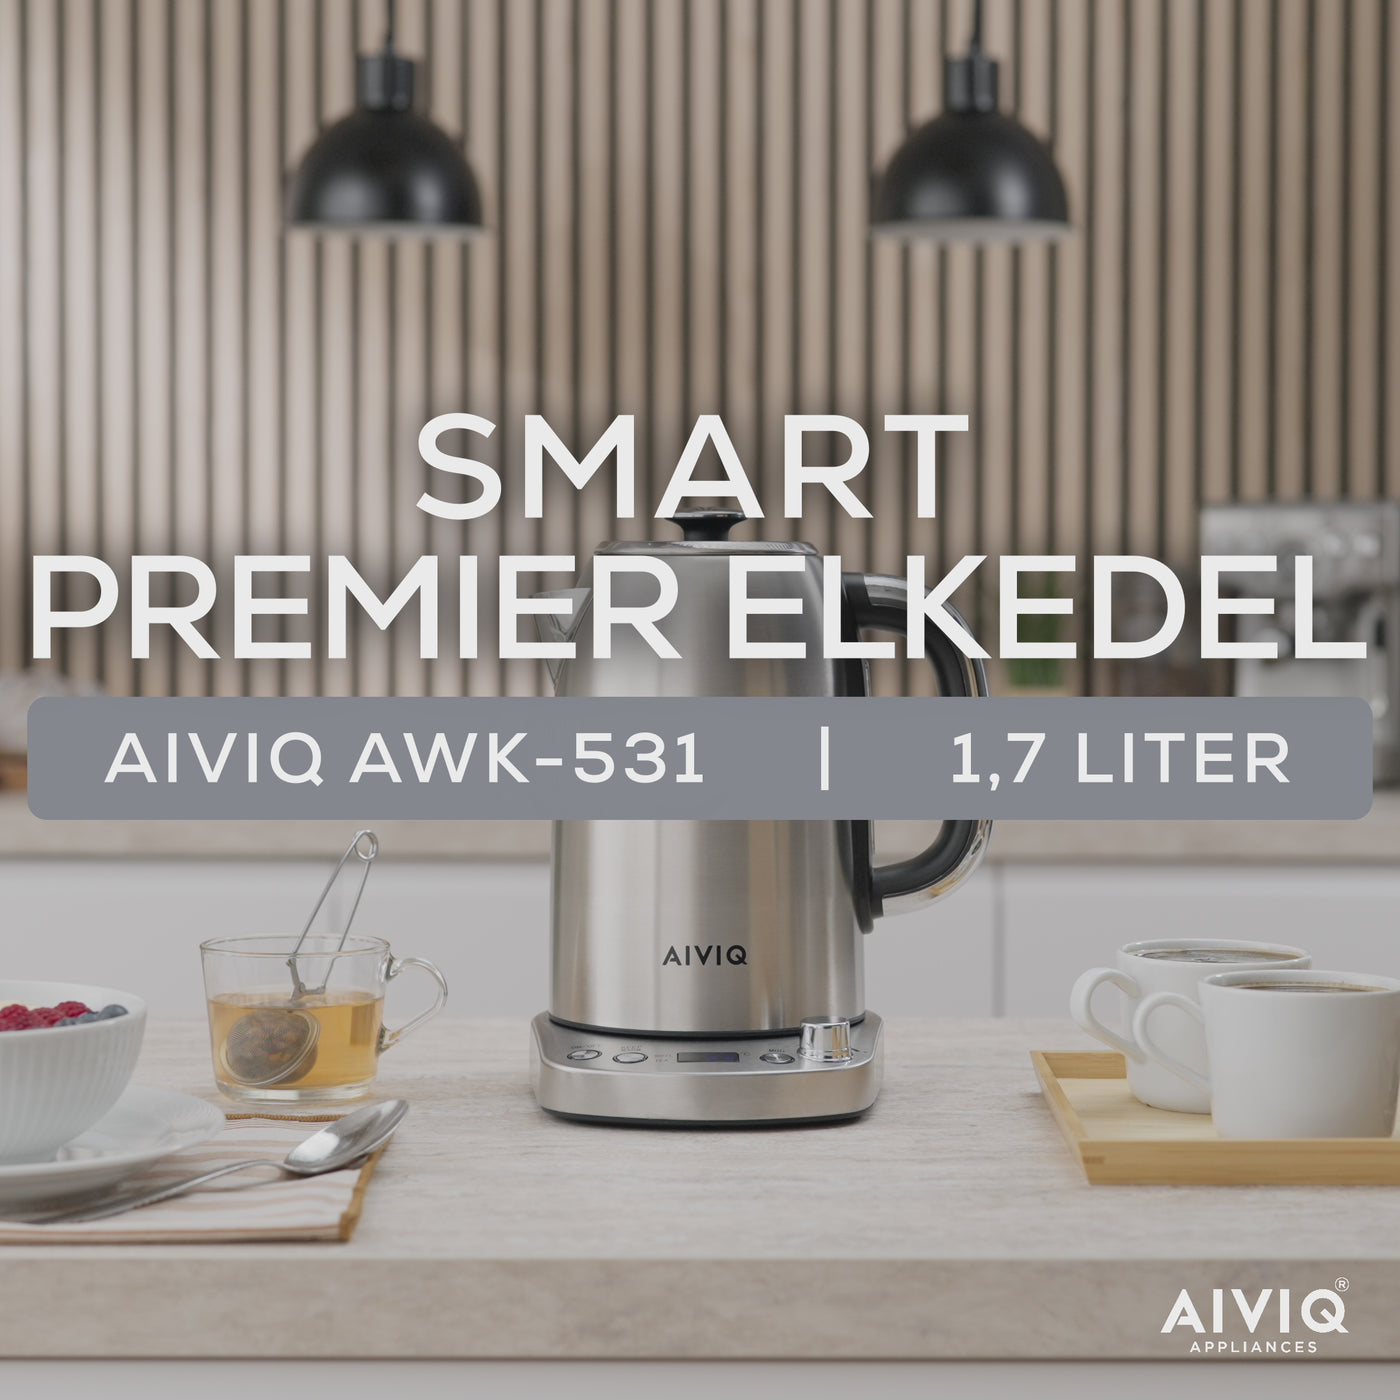 AIVIQ Smart Premier Elkedel 1.7L - AWK-531